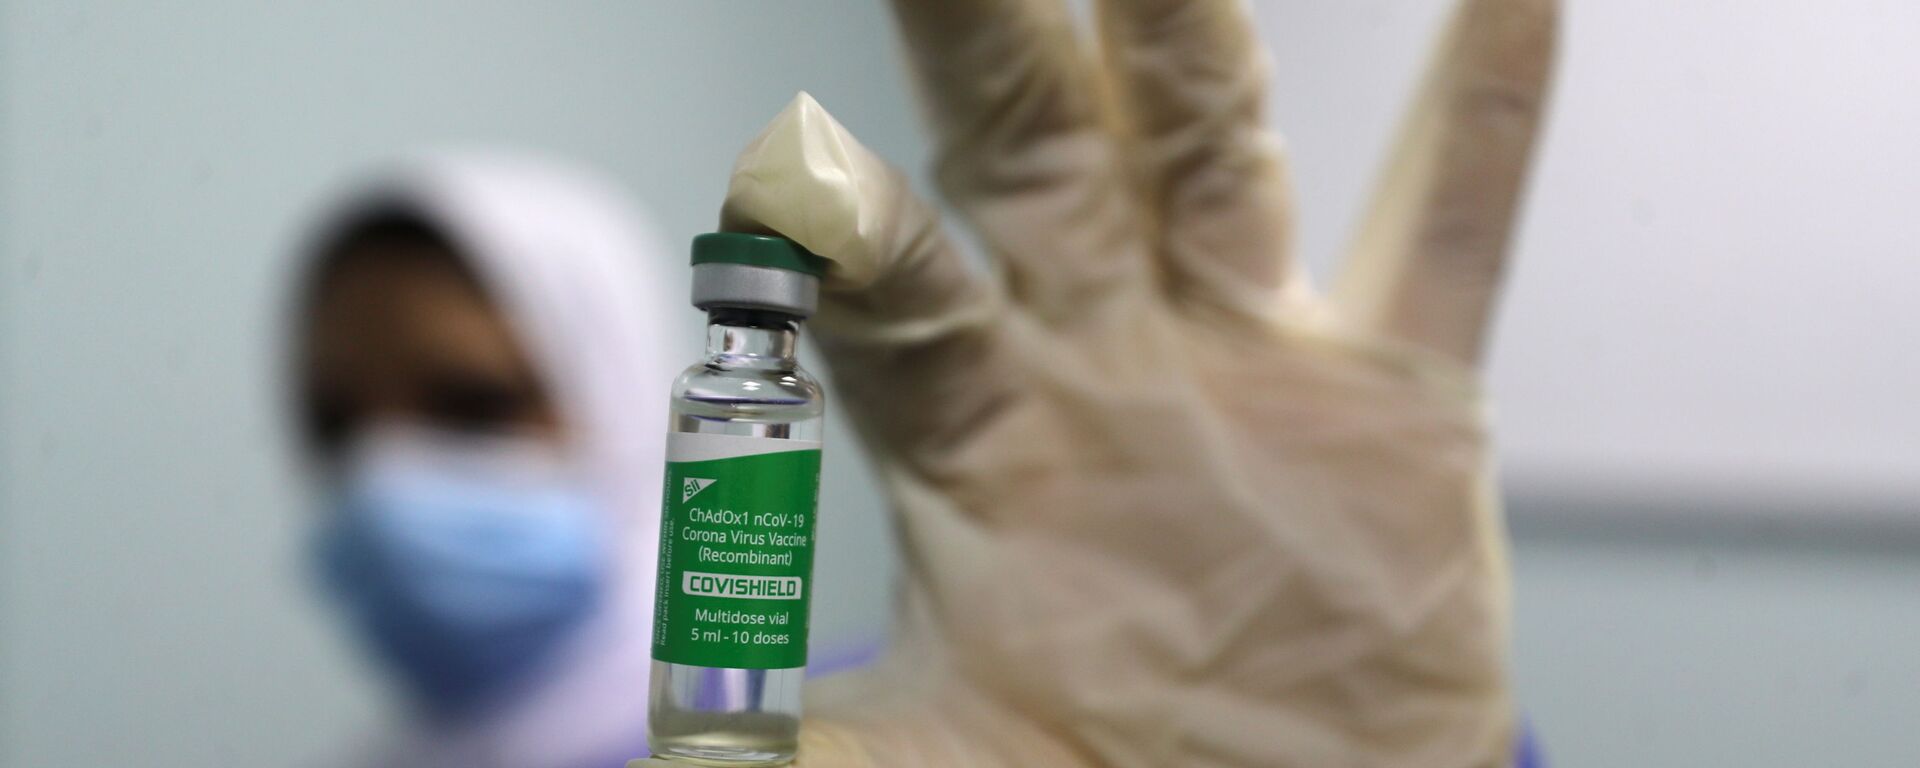 بدء تطعيم واسع النطاق في مصر ضد فيروس كورونا (كوفيد-19)، القاهرة، 4 مارس 2021 - سبوتنيك عربي, 1920, 22.09.2021